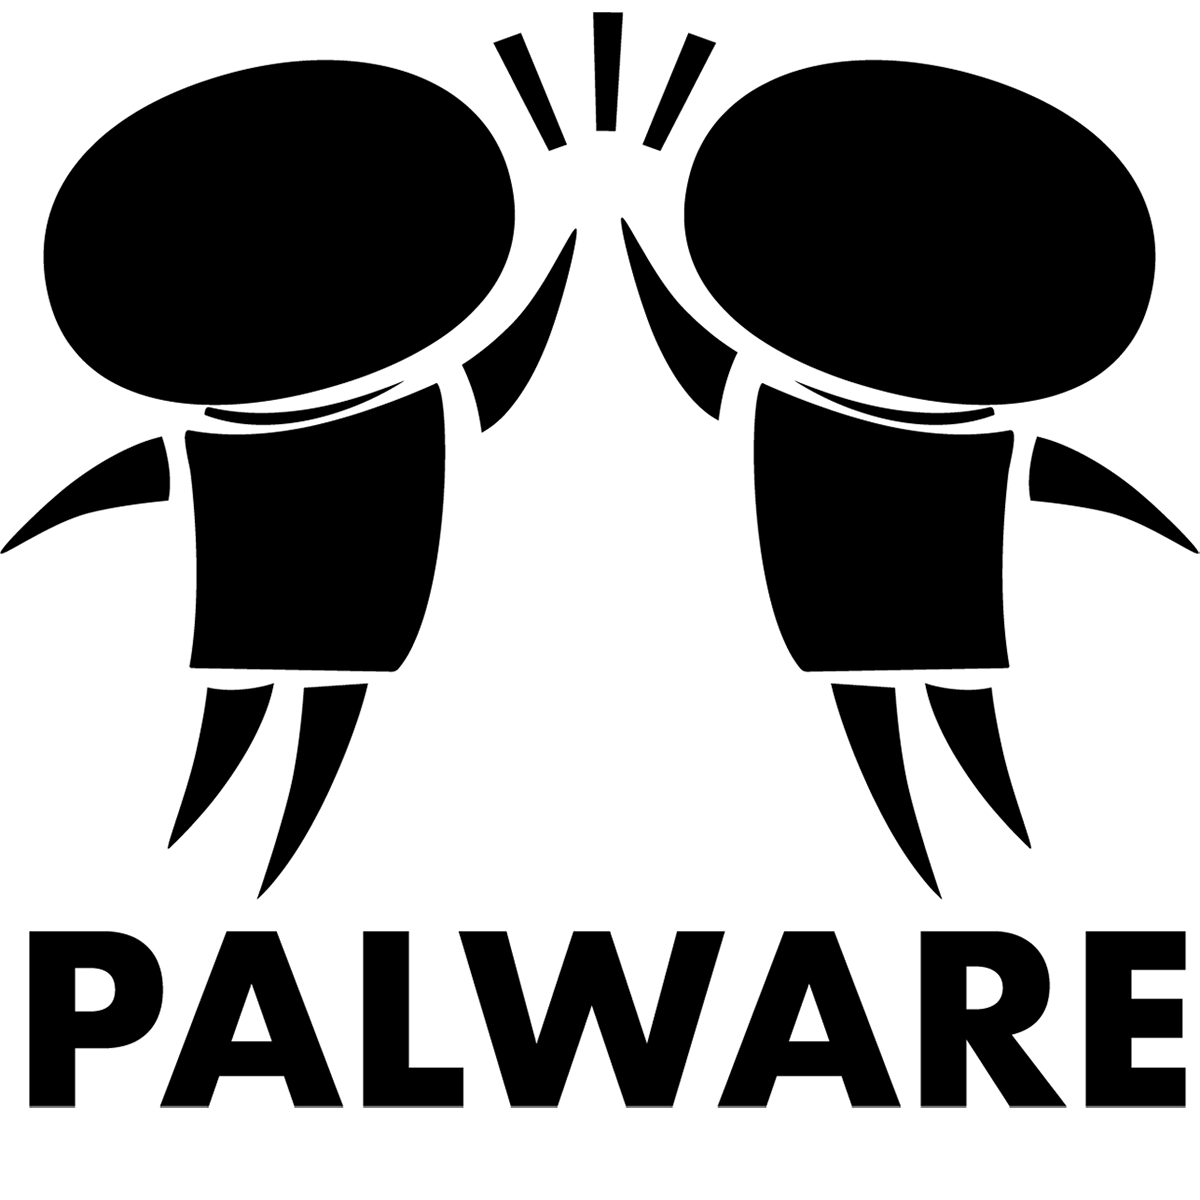 PALware logo